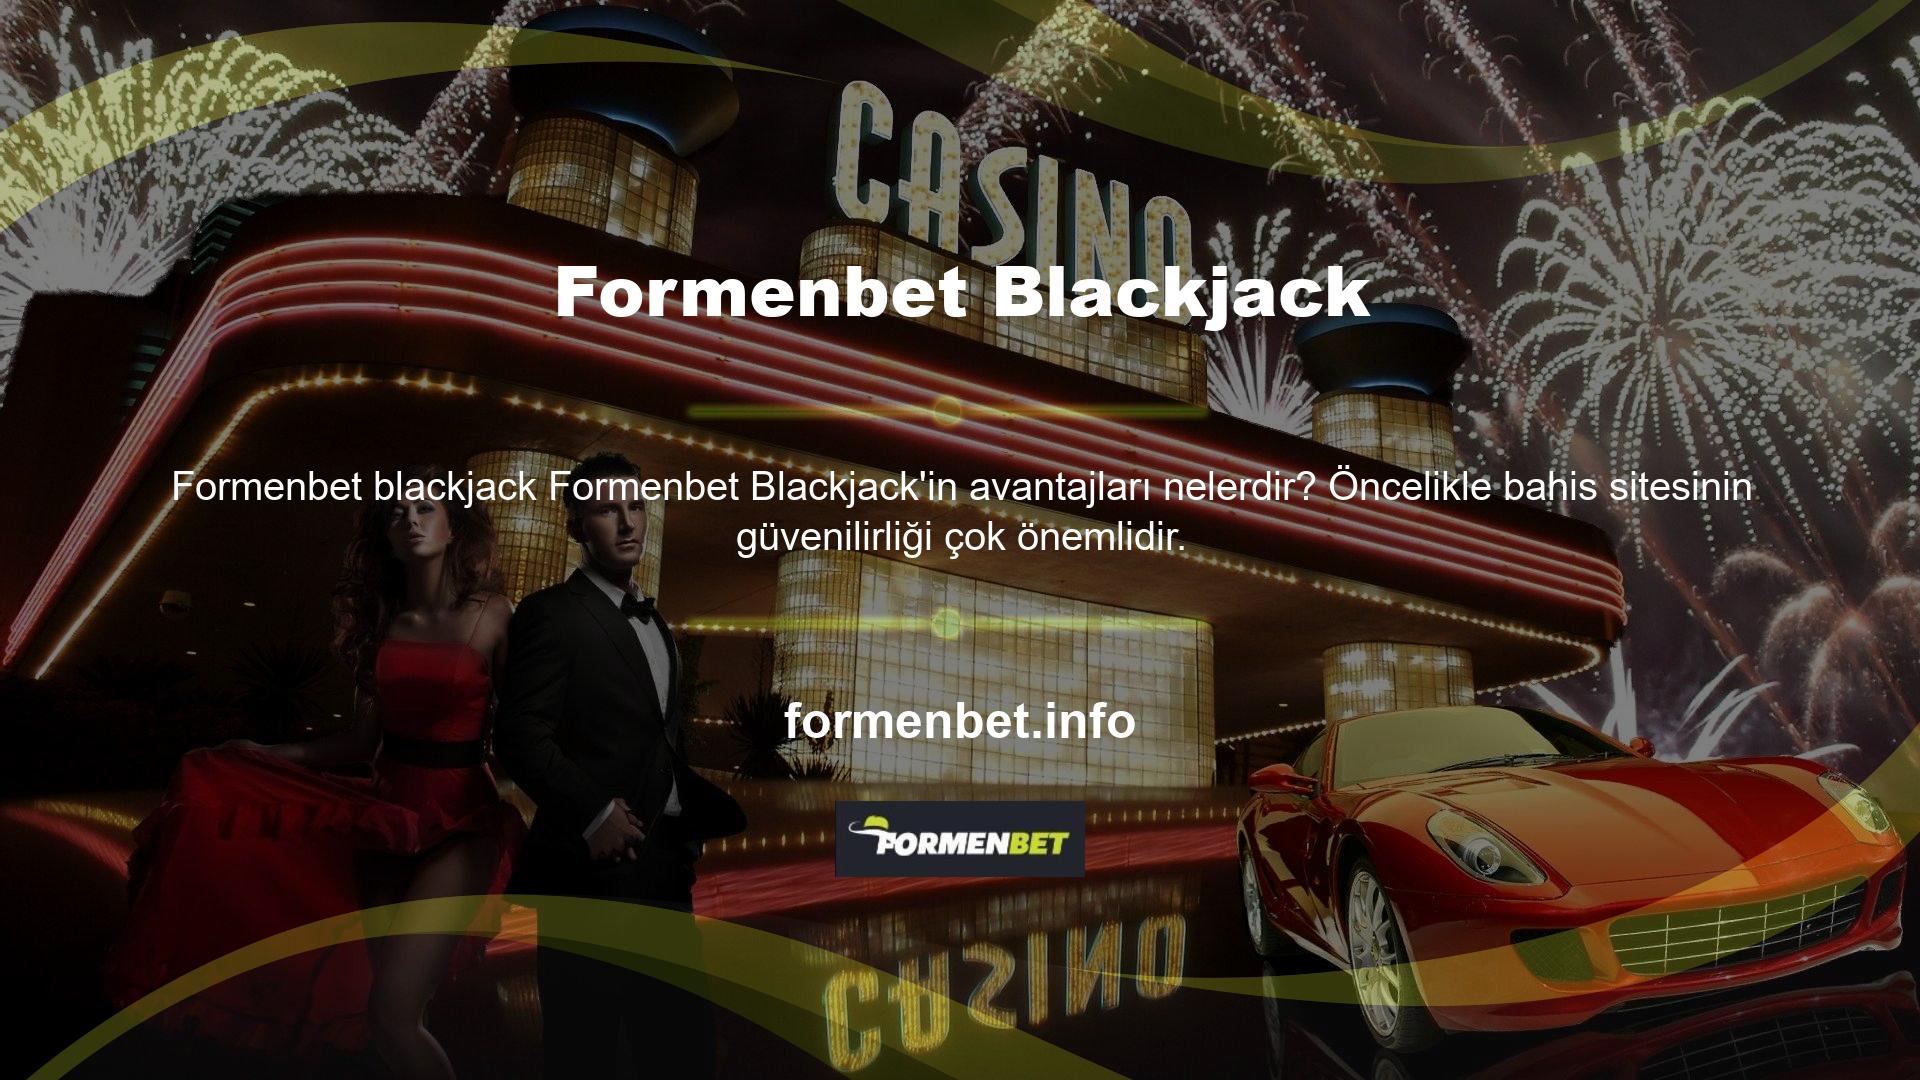 Formenbet web sitesi güvenilirliği ile tanınan bir casino şirketidir